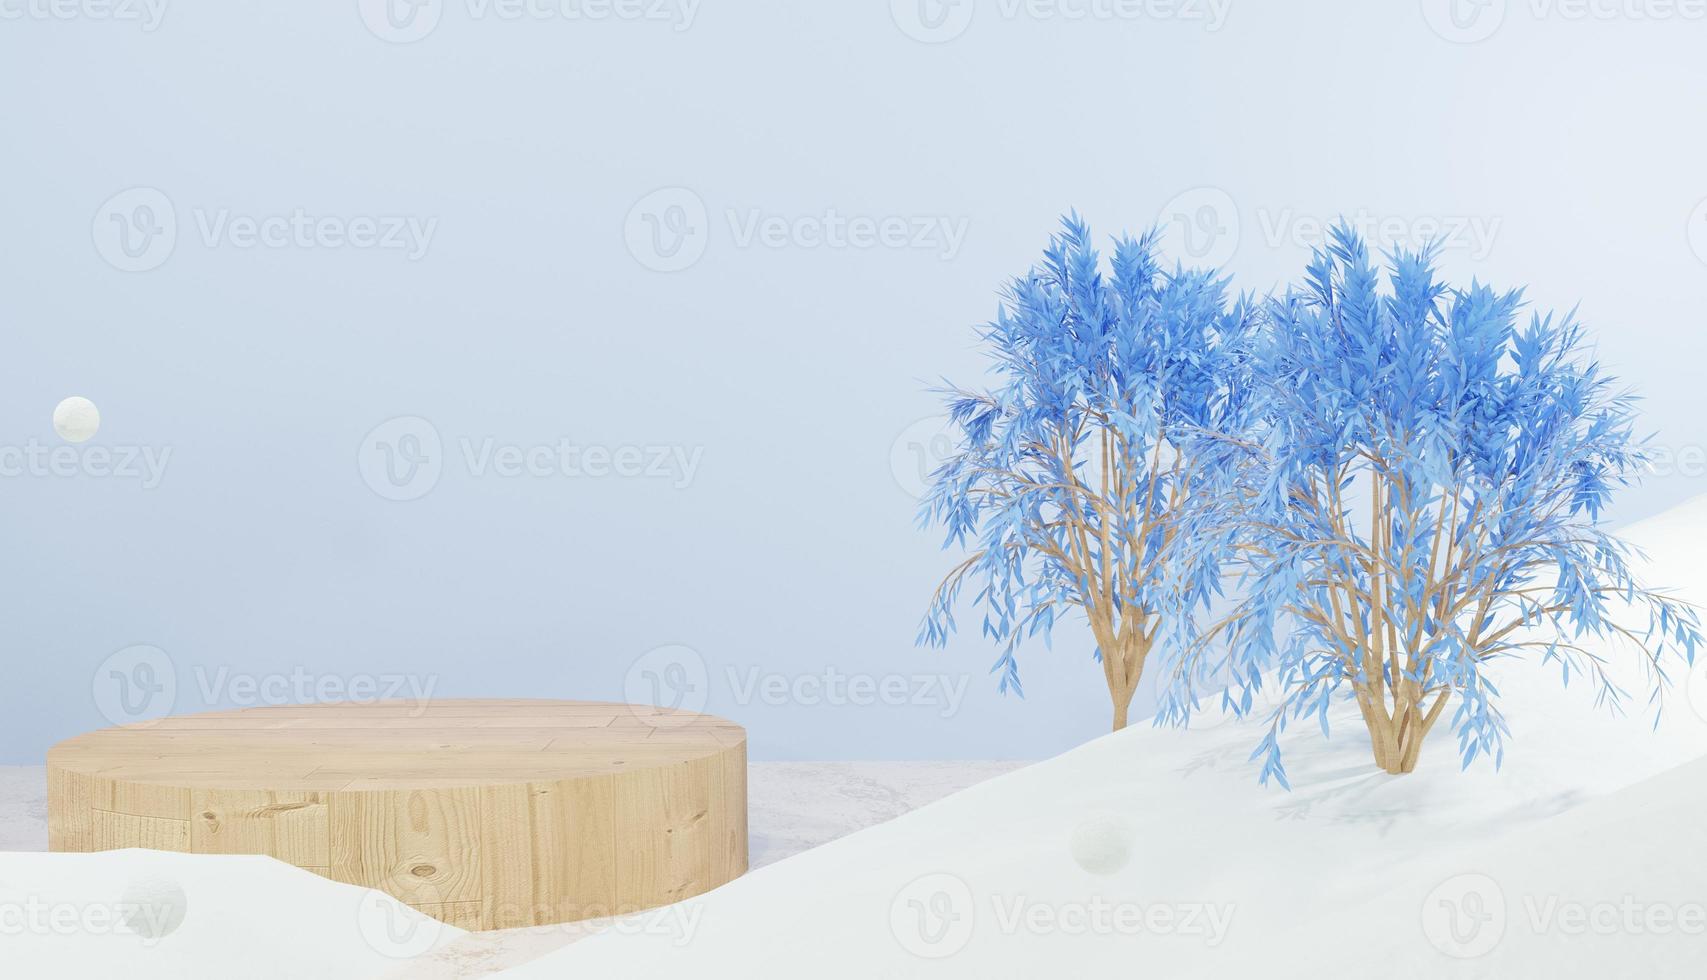 3D-rendering leeg houten podium en bomen omgeven door sneeuw, winterthema foto